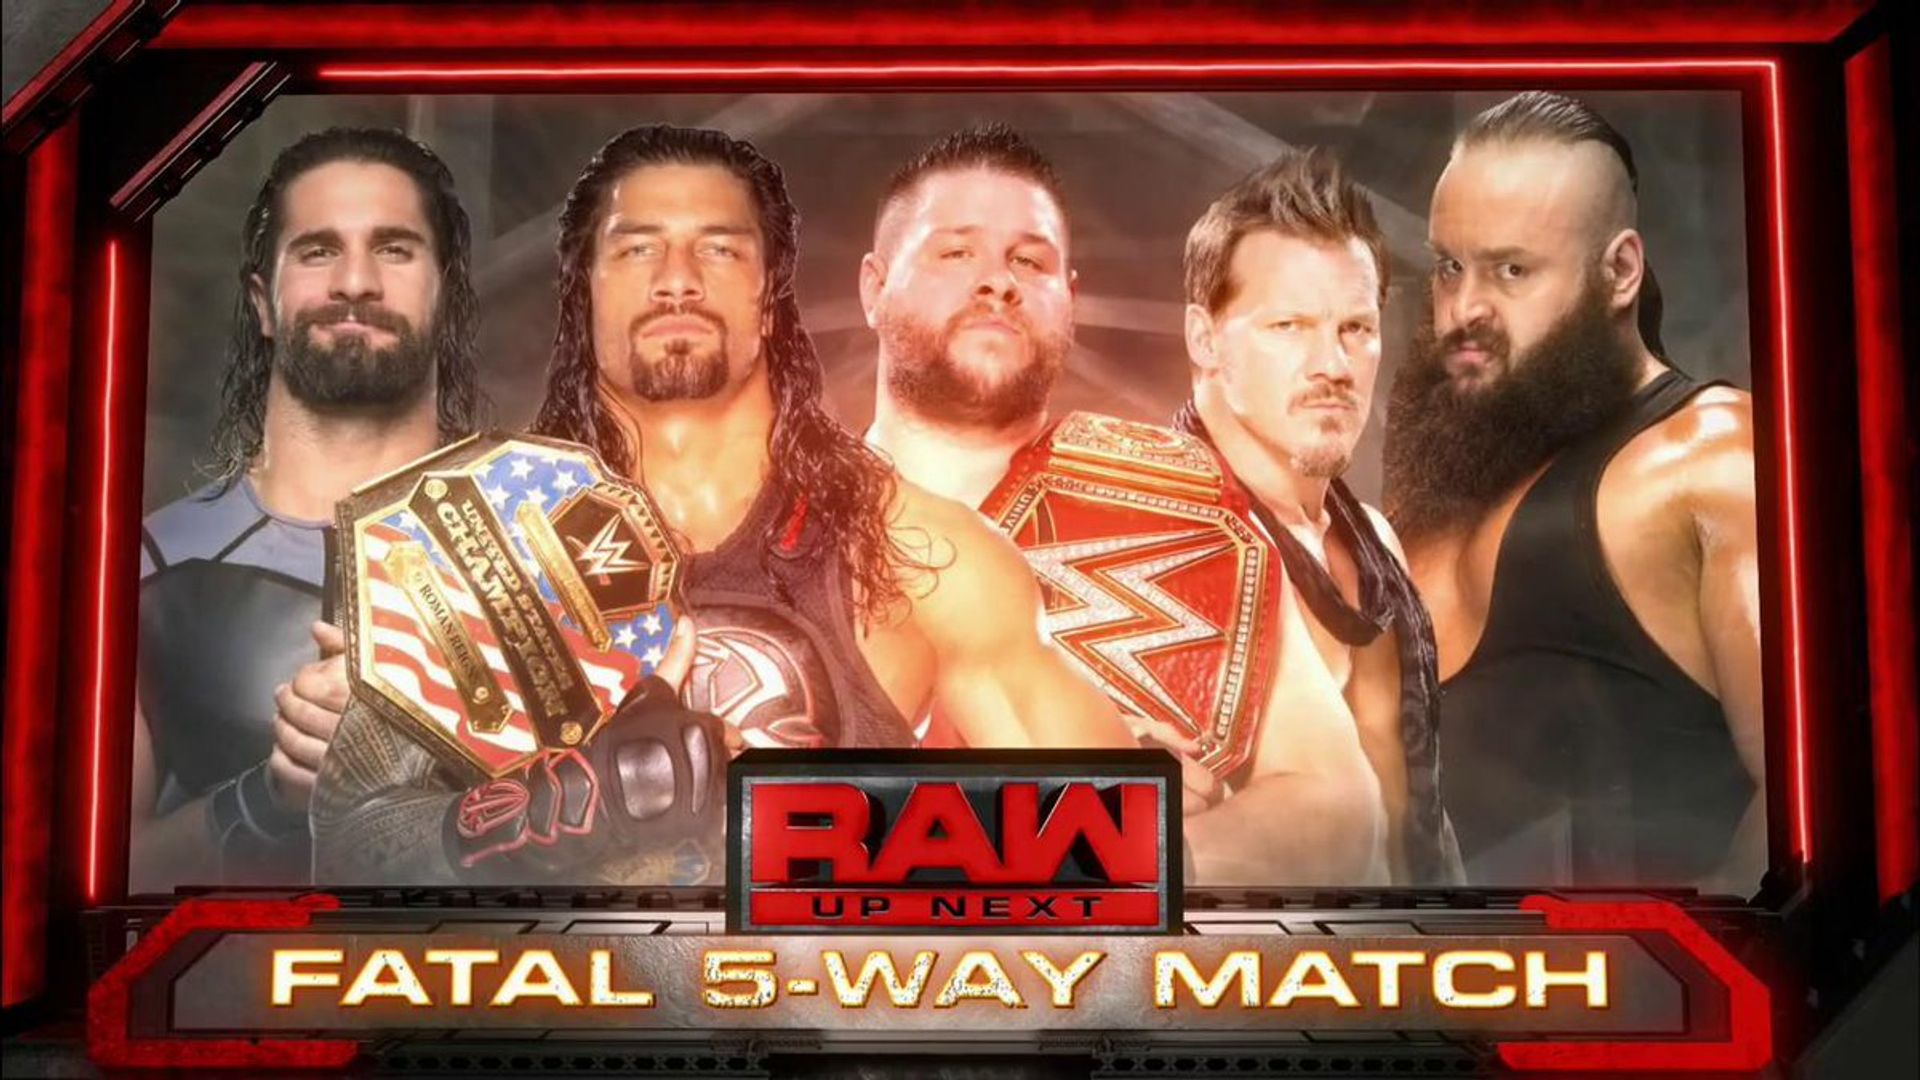 WWE Raw background